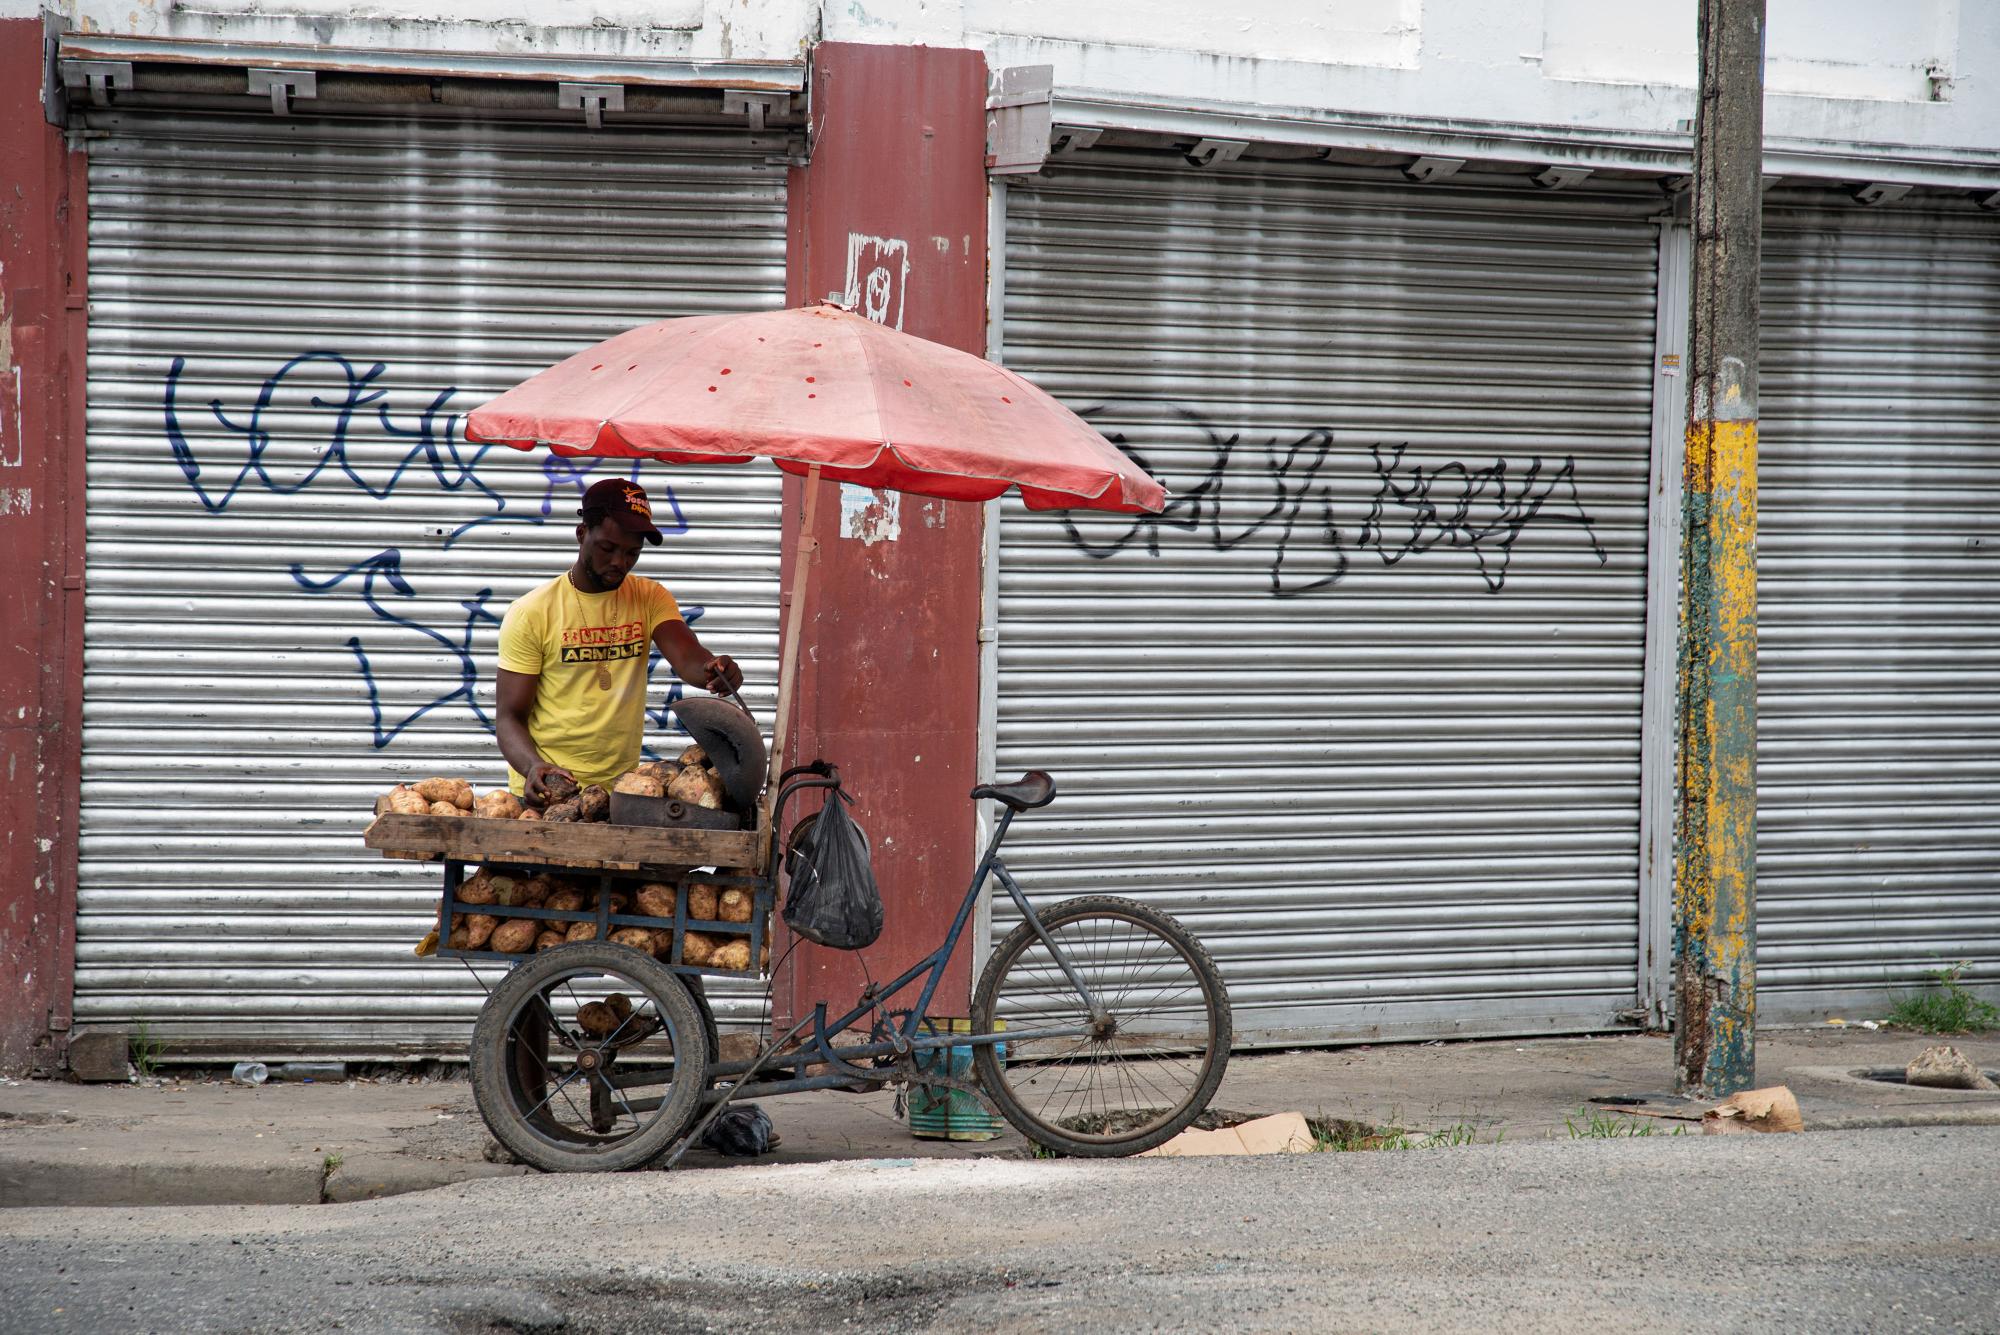 Domingo es un vendedor de batata asada que circula las calles de Santo Domingo en una bicicleta convertida en una venta ambulante. (Foto: Dania Acevedo)